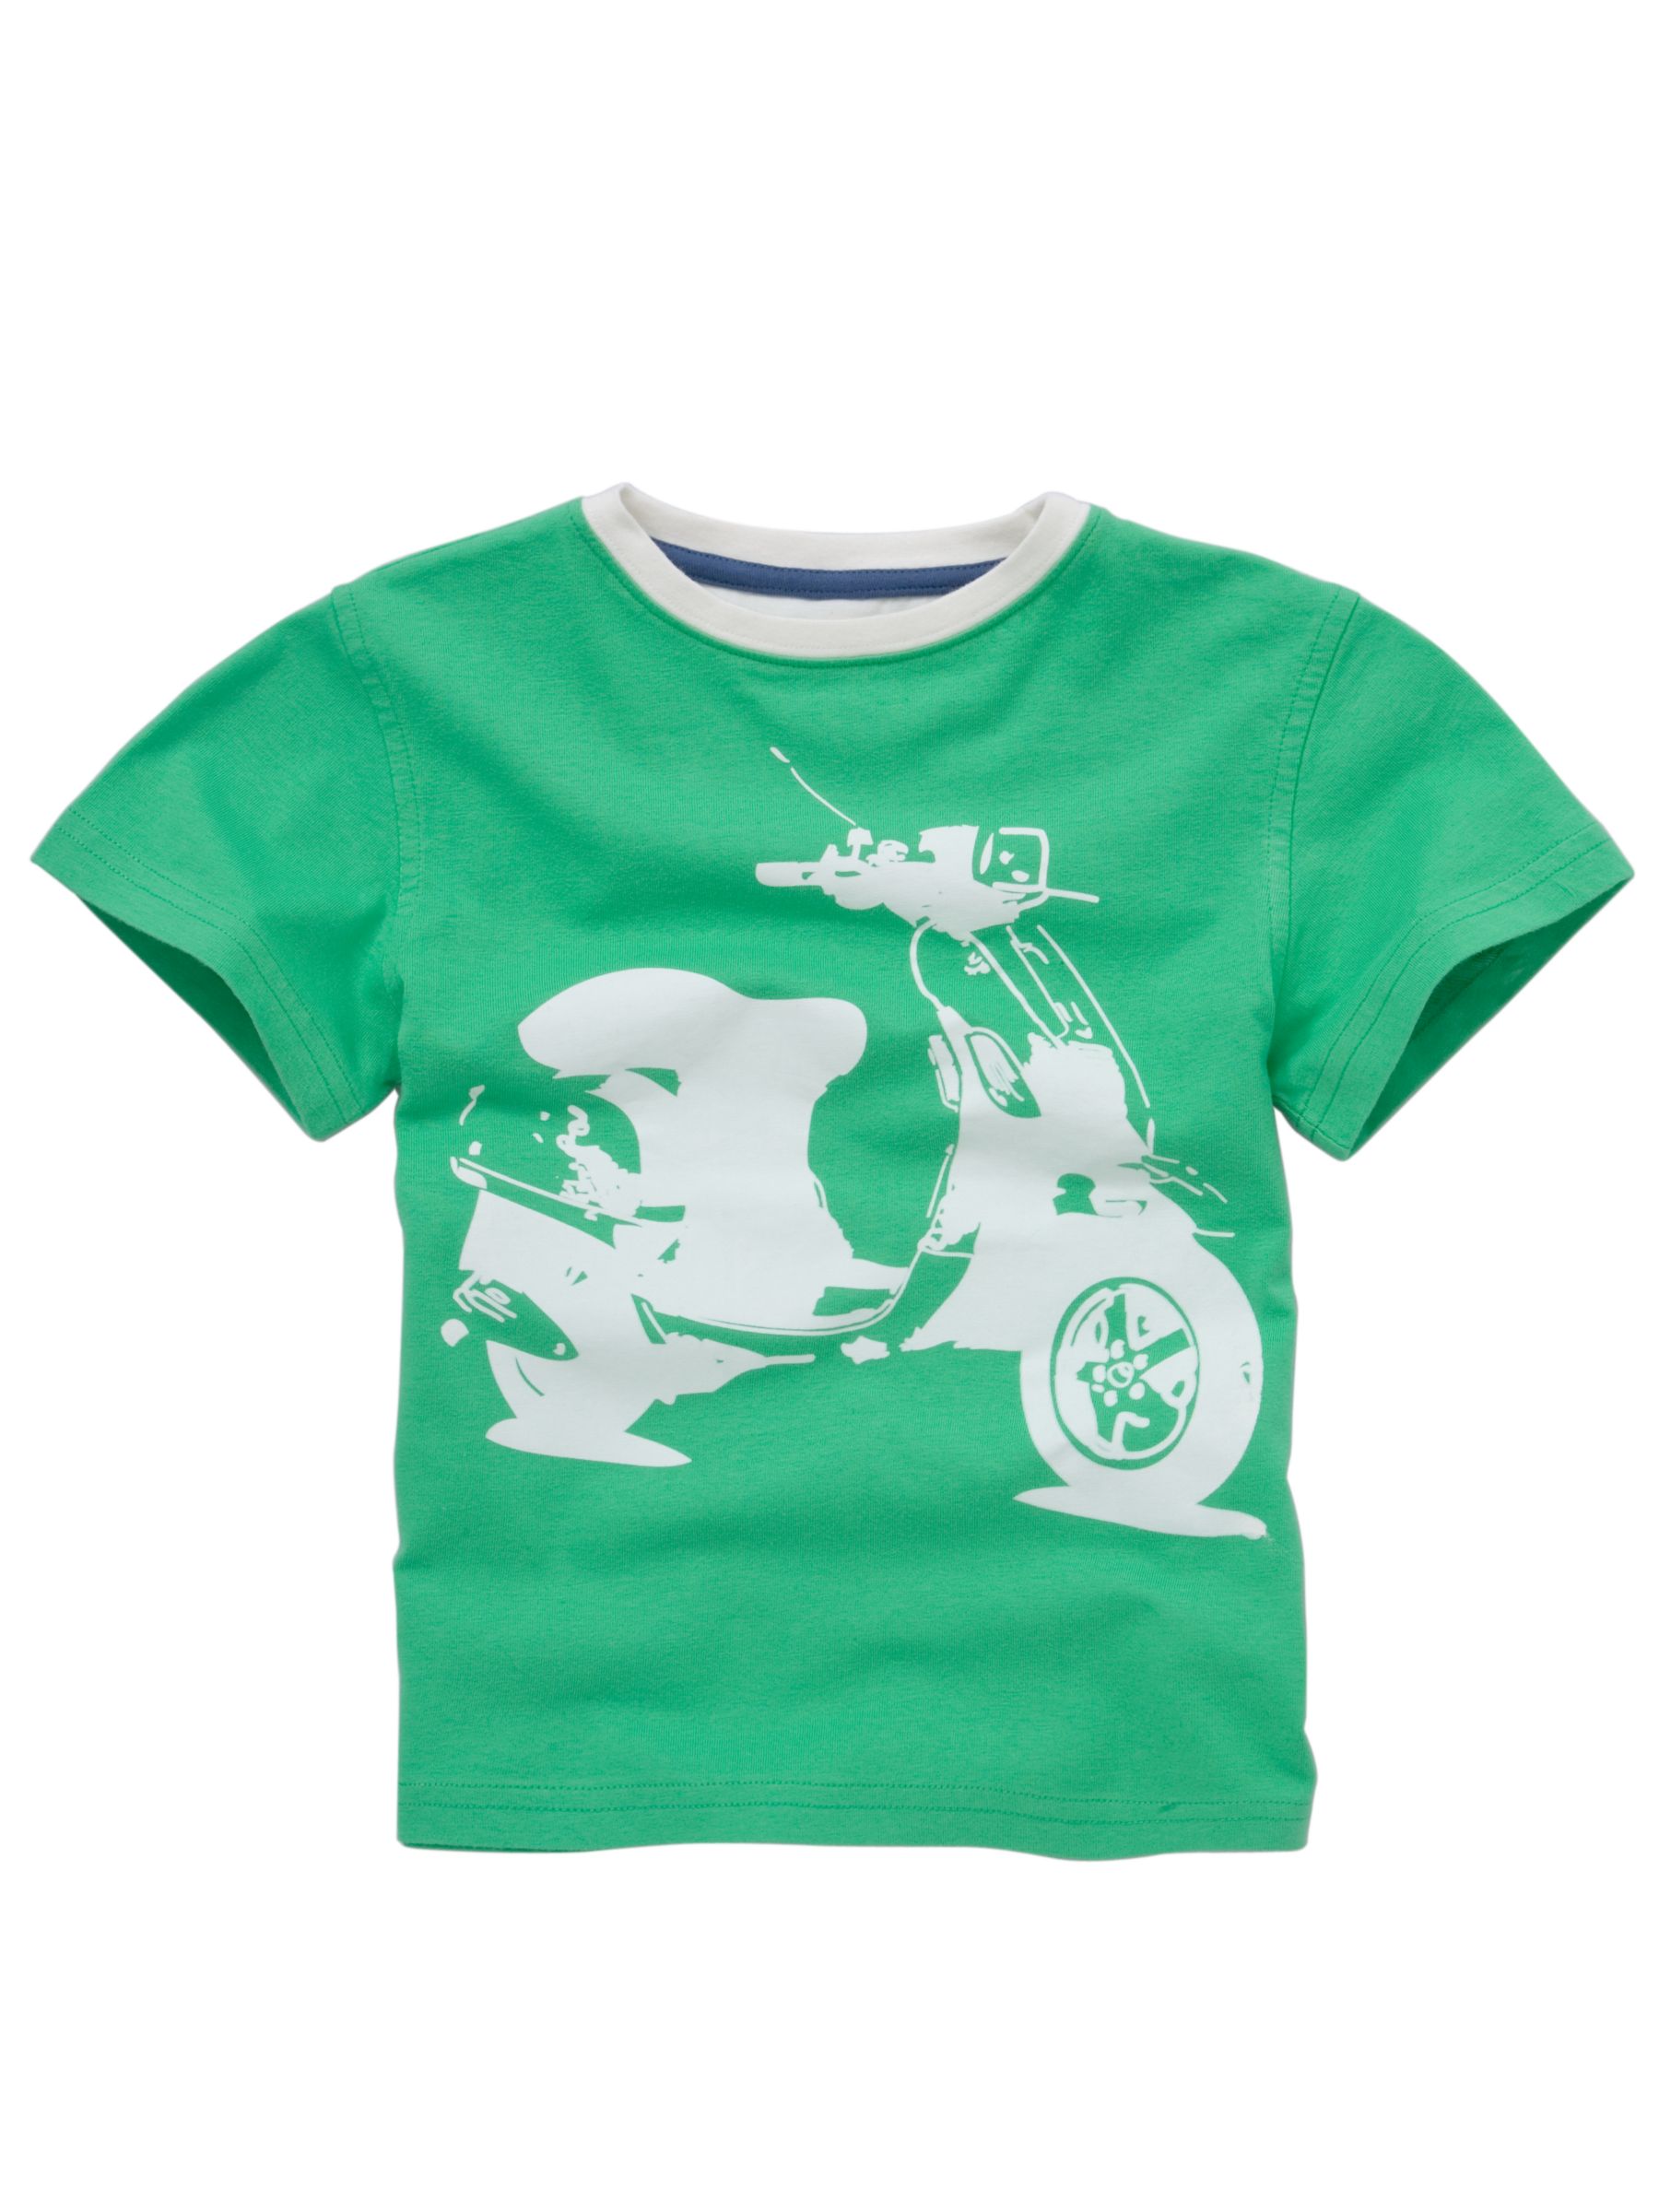 Scooter Print T-Shirt, Green